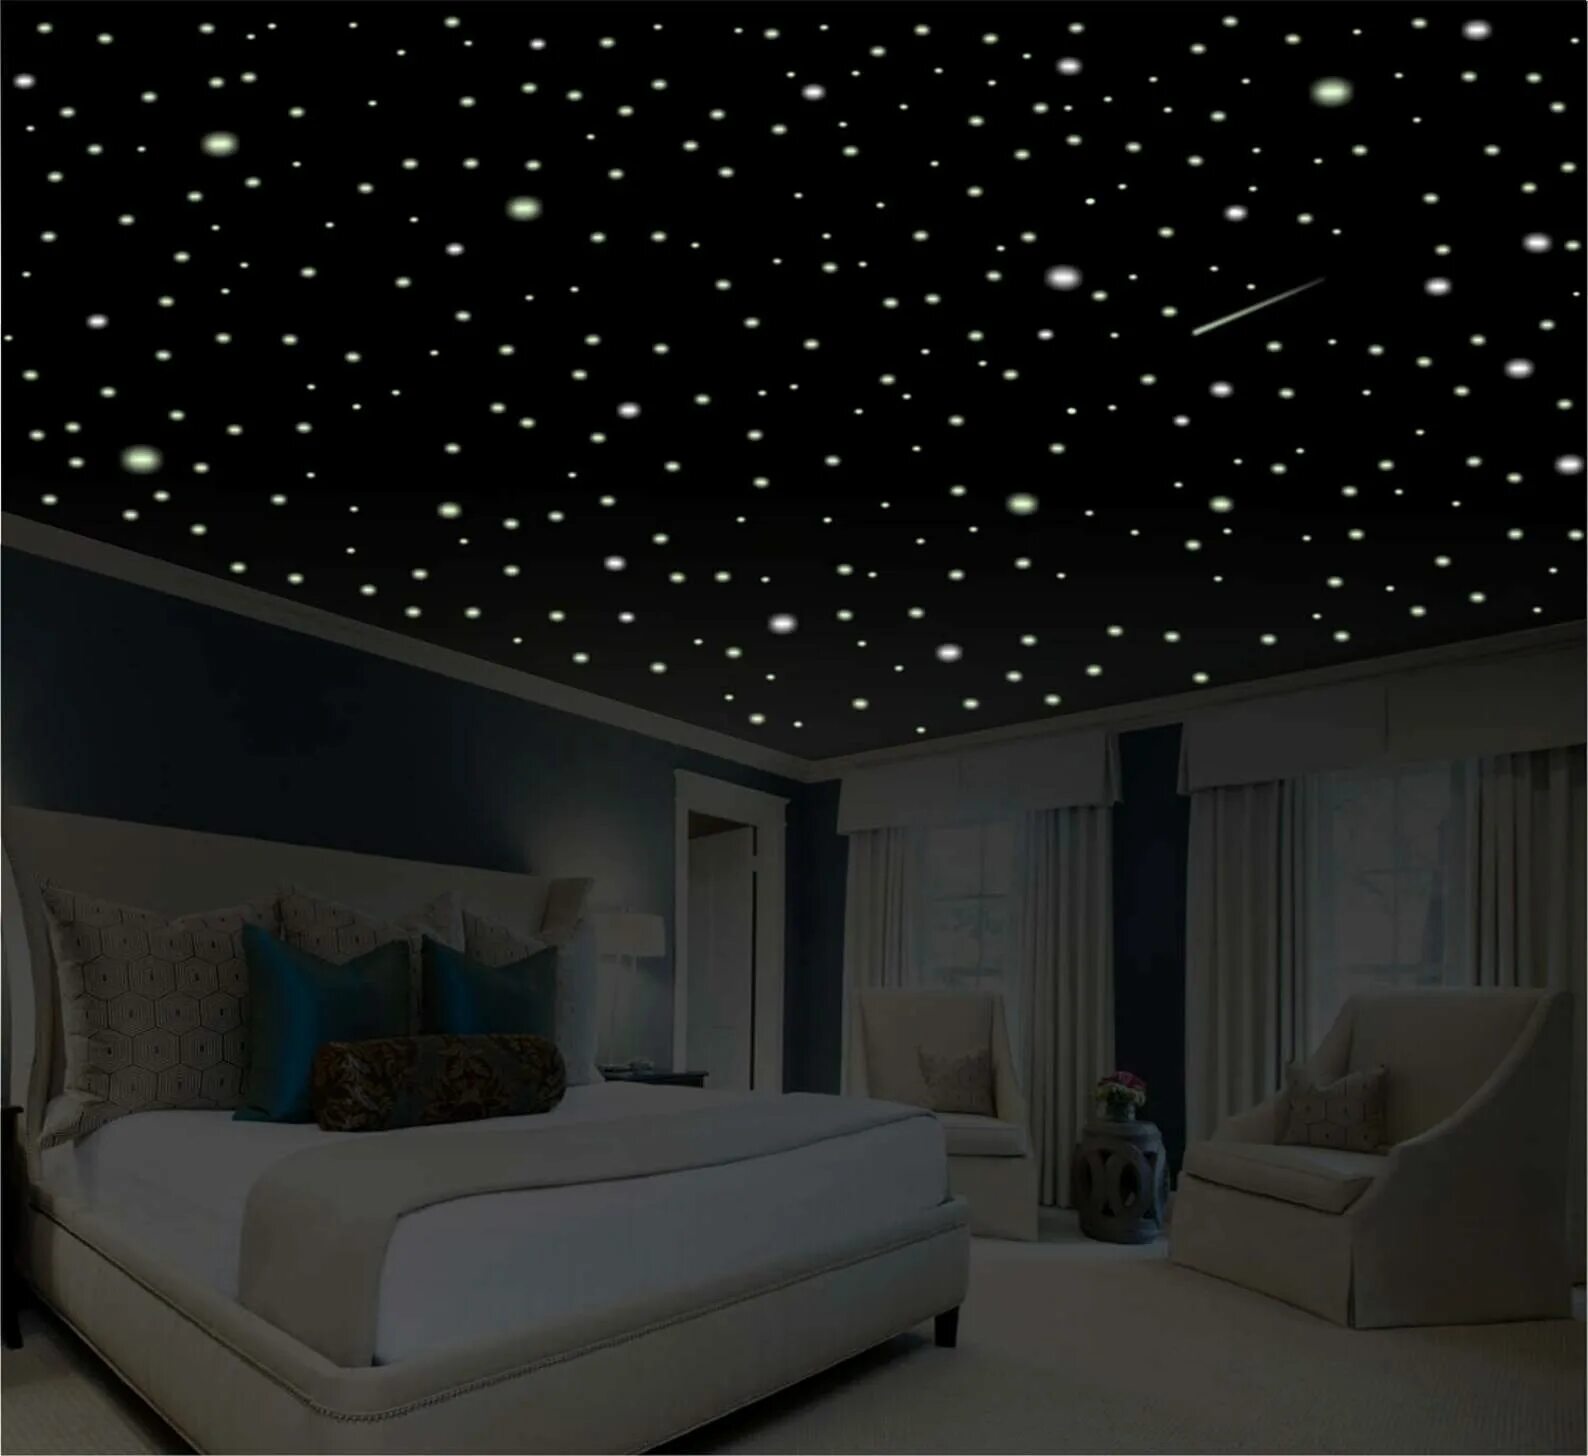 Светила звездного неба. Натяжной потолок звездное небо. Звездное небо с мерцанием звезд + натяжной потолок. Потолок "звездное небо" 20 плиток. ВИПСИЛИНГ звездное небо.